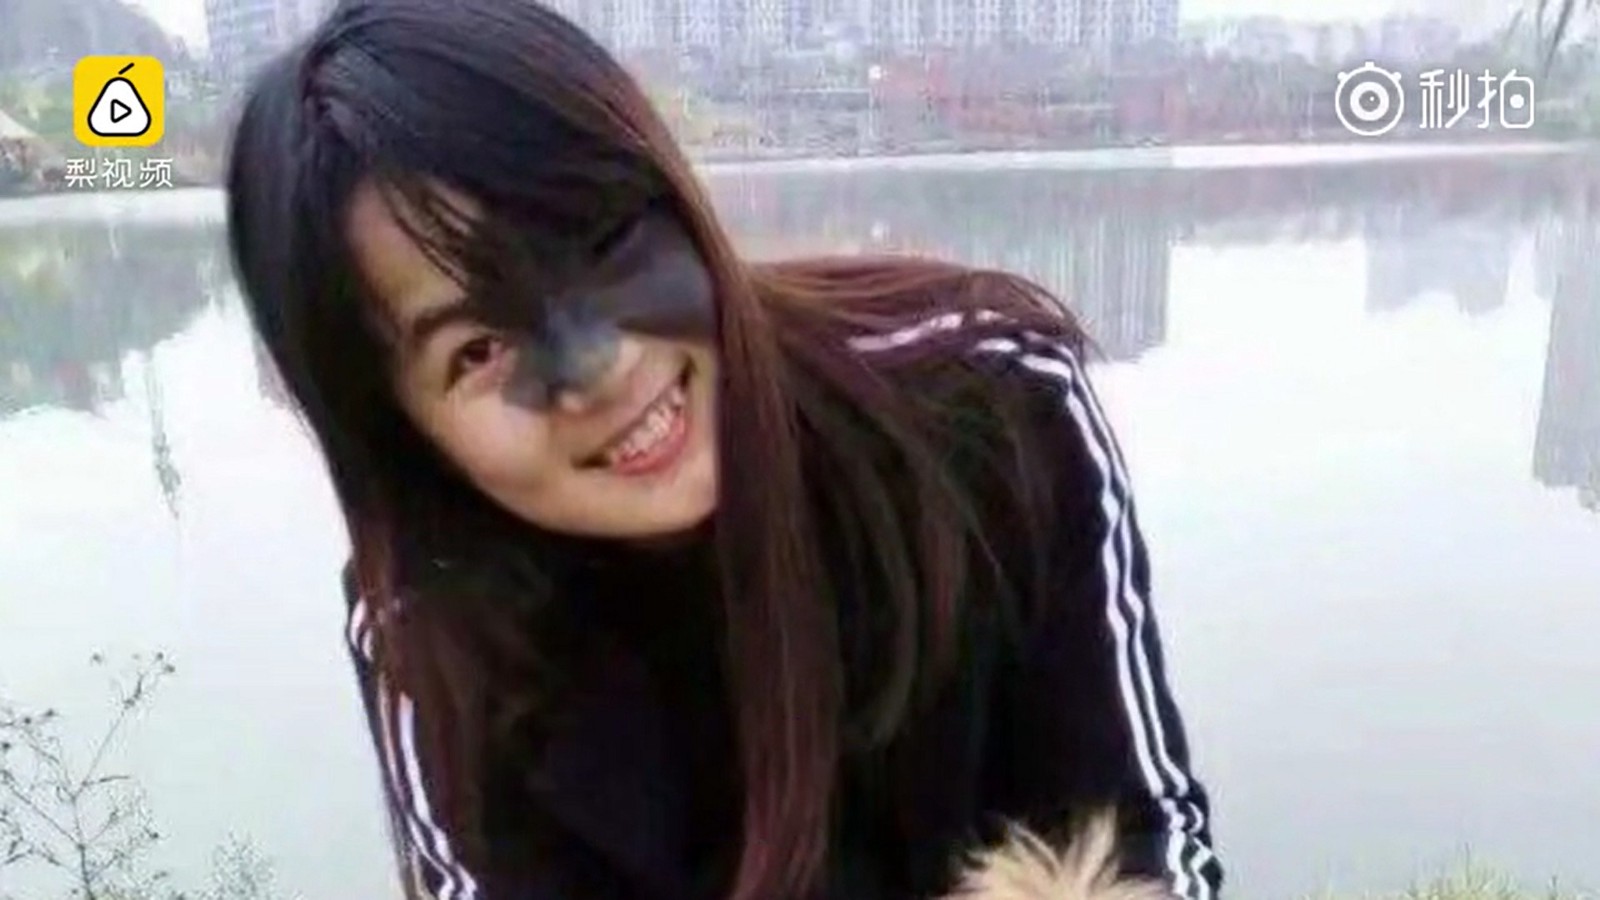 23歳の中国の美女 顔に出来たシミ跡治療のために顔を風船のように膨らますハメに ひょうたん女 と中国で話題に ニコニコニュース